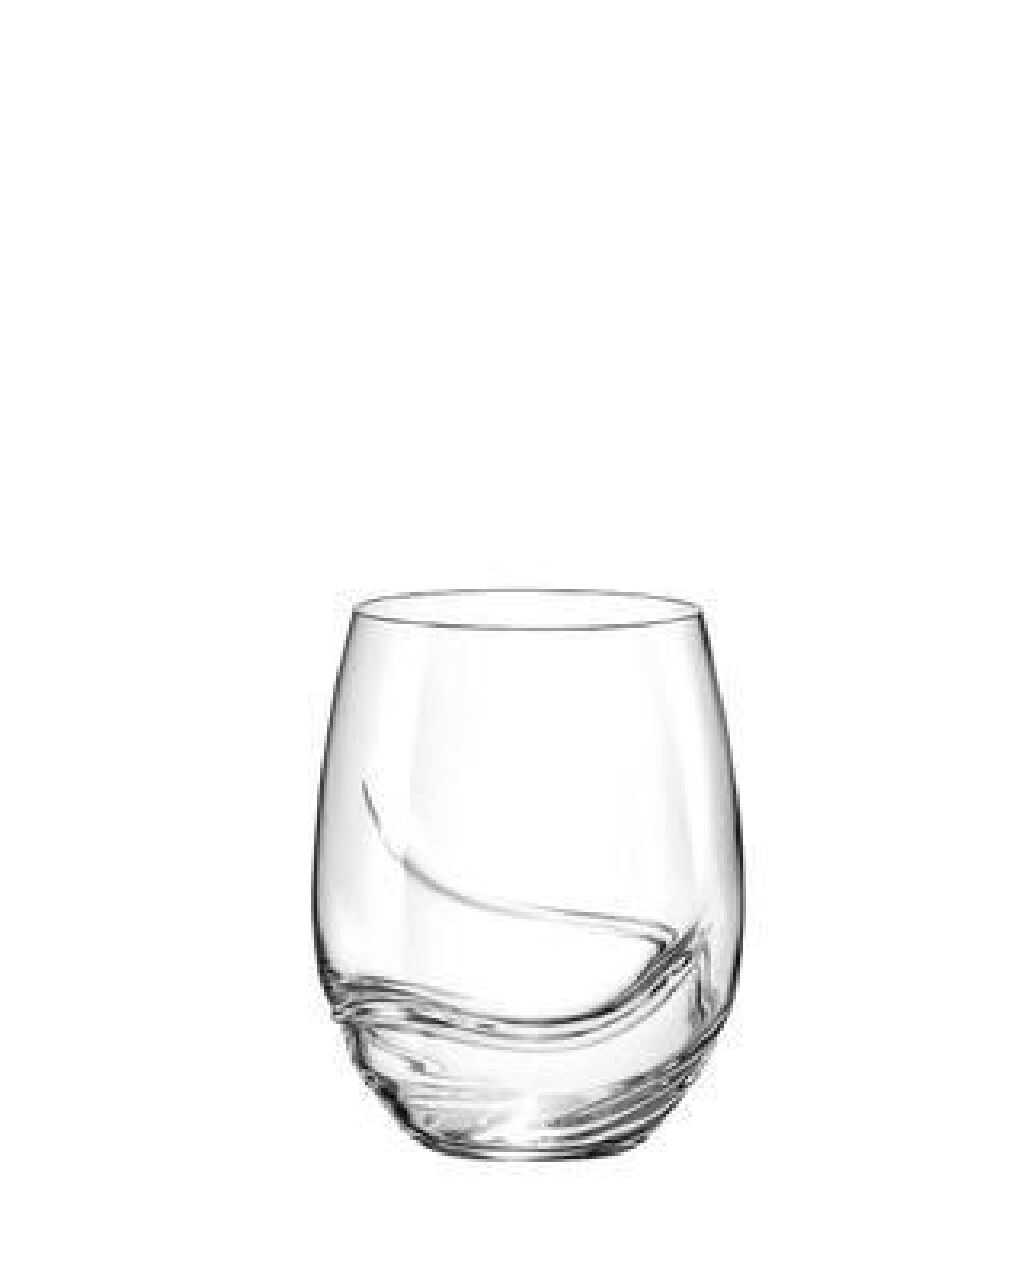 Rotwein Glas/ Mehrzweckgläser Turbulenz-8197 500 ml 1 Stück.